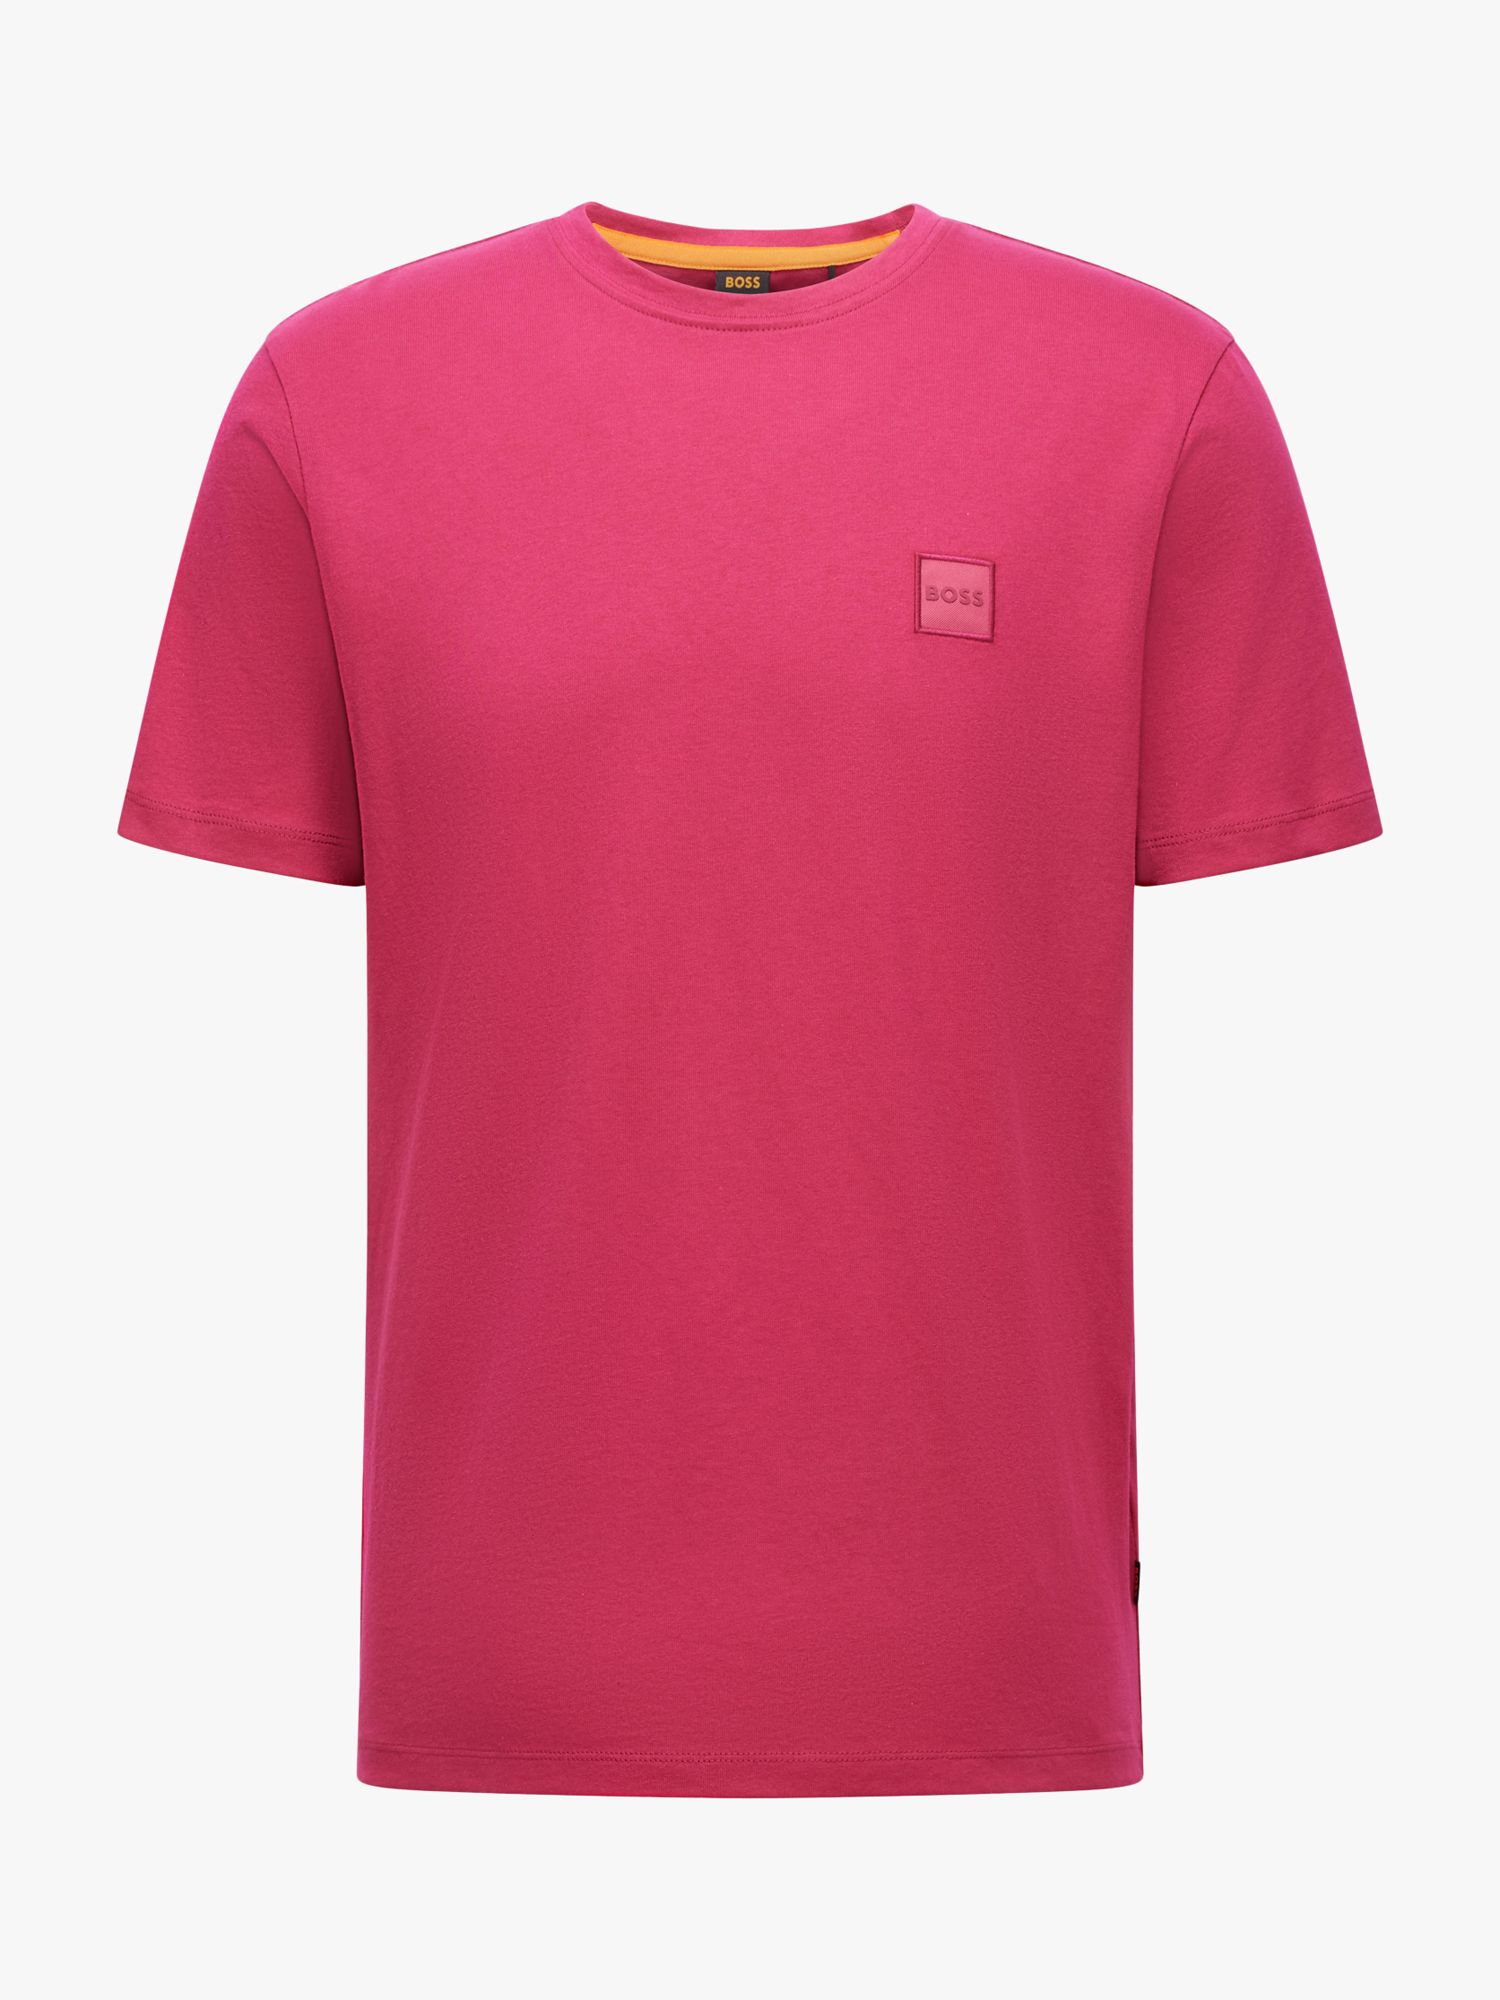 BOSS Tales Tonal Logo T-Shirt, Bright Pink at John Lewis & Partners